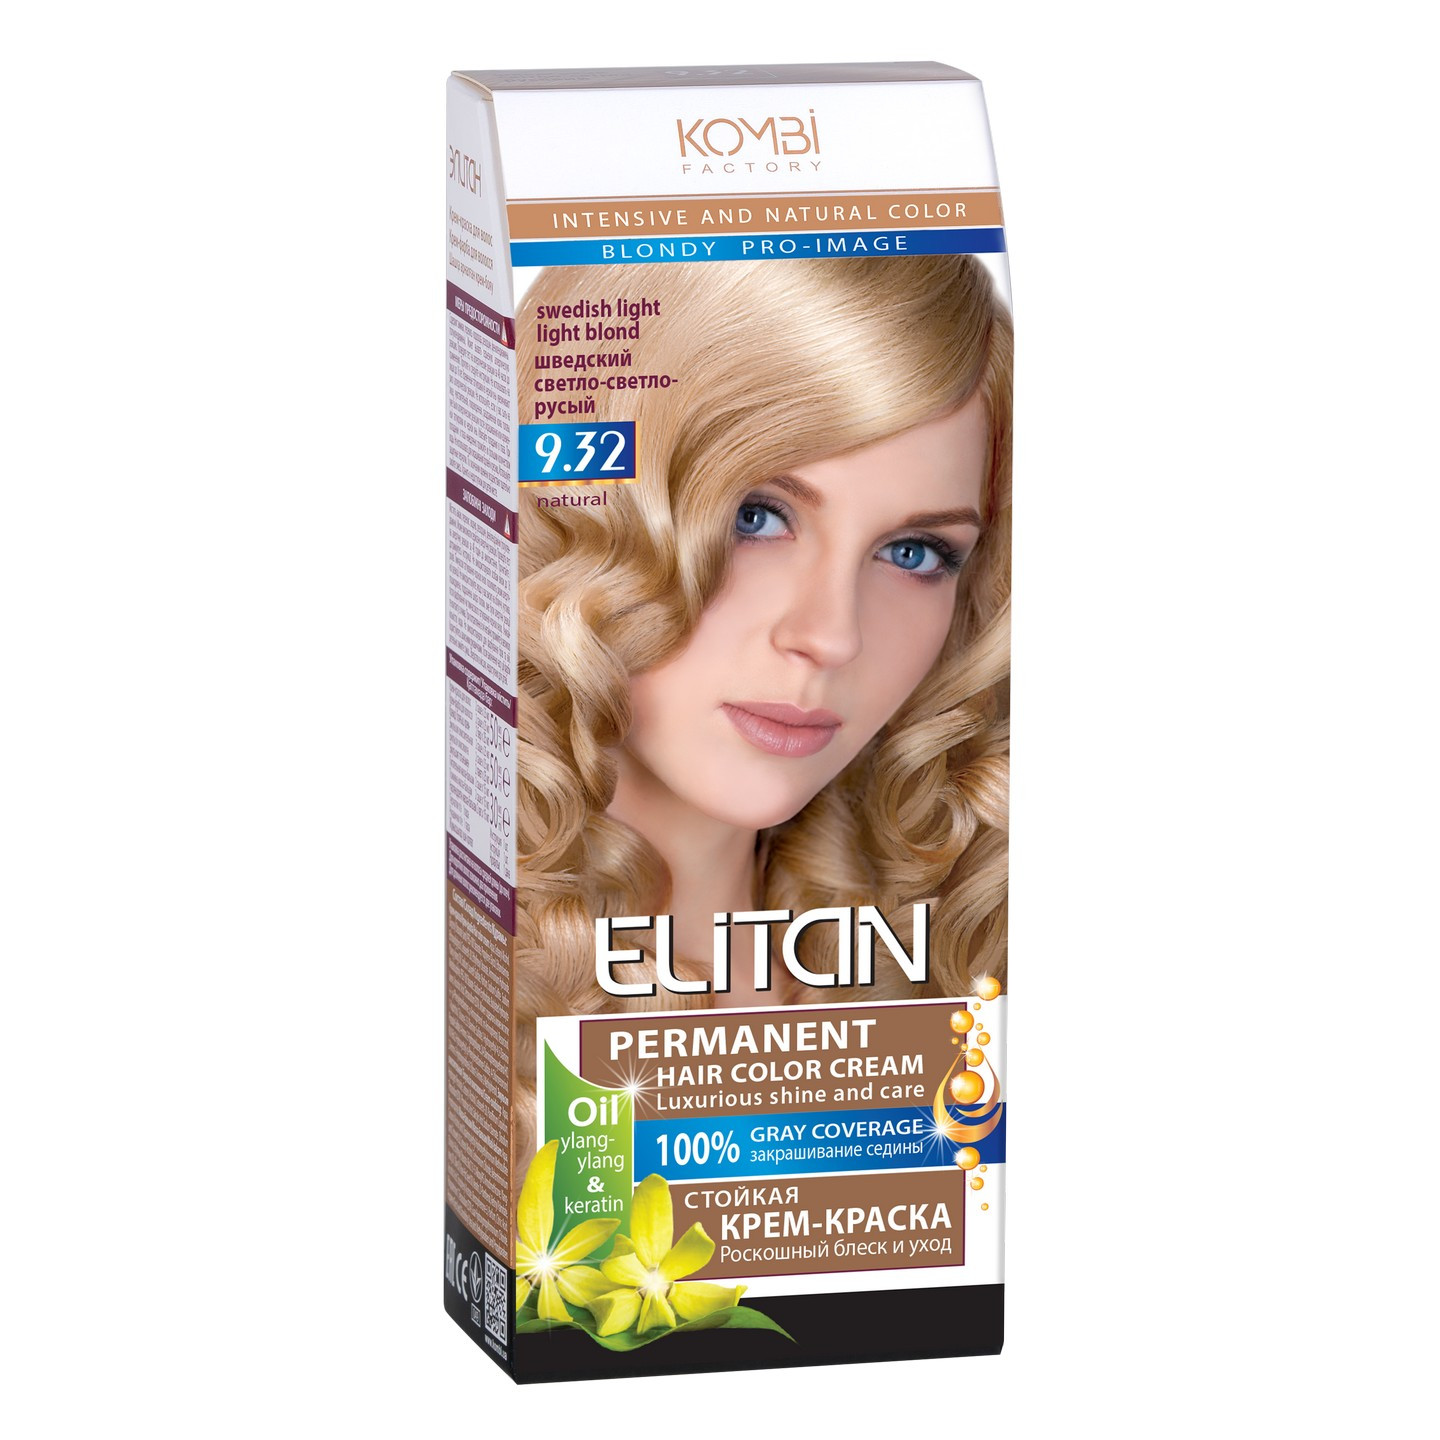 Стійка крем-фарба для волосся «Elitan» intensive and natural color, 9.32 — Шведський світло-світло-русявий